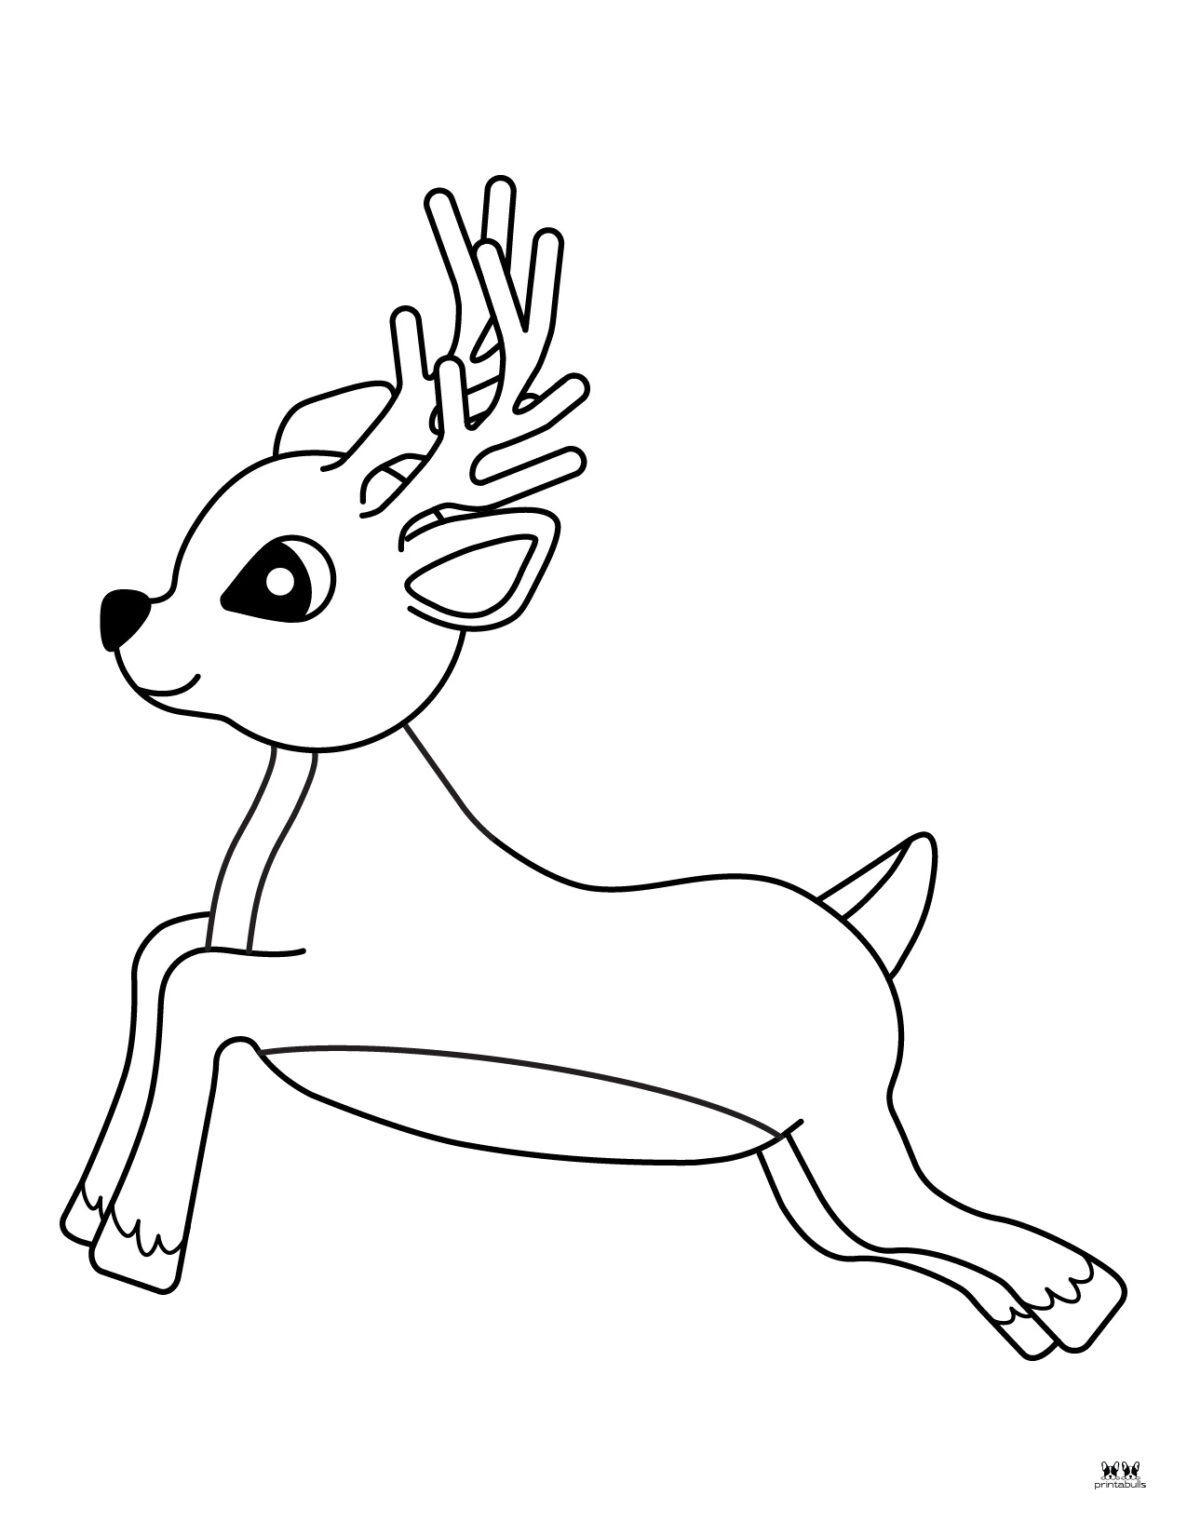 reindeer-coloring-pages-30-free-printable-pages-printabulls